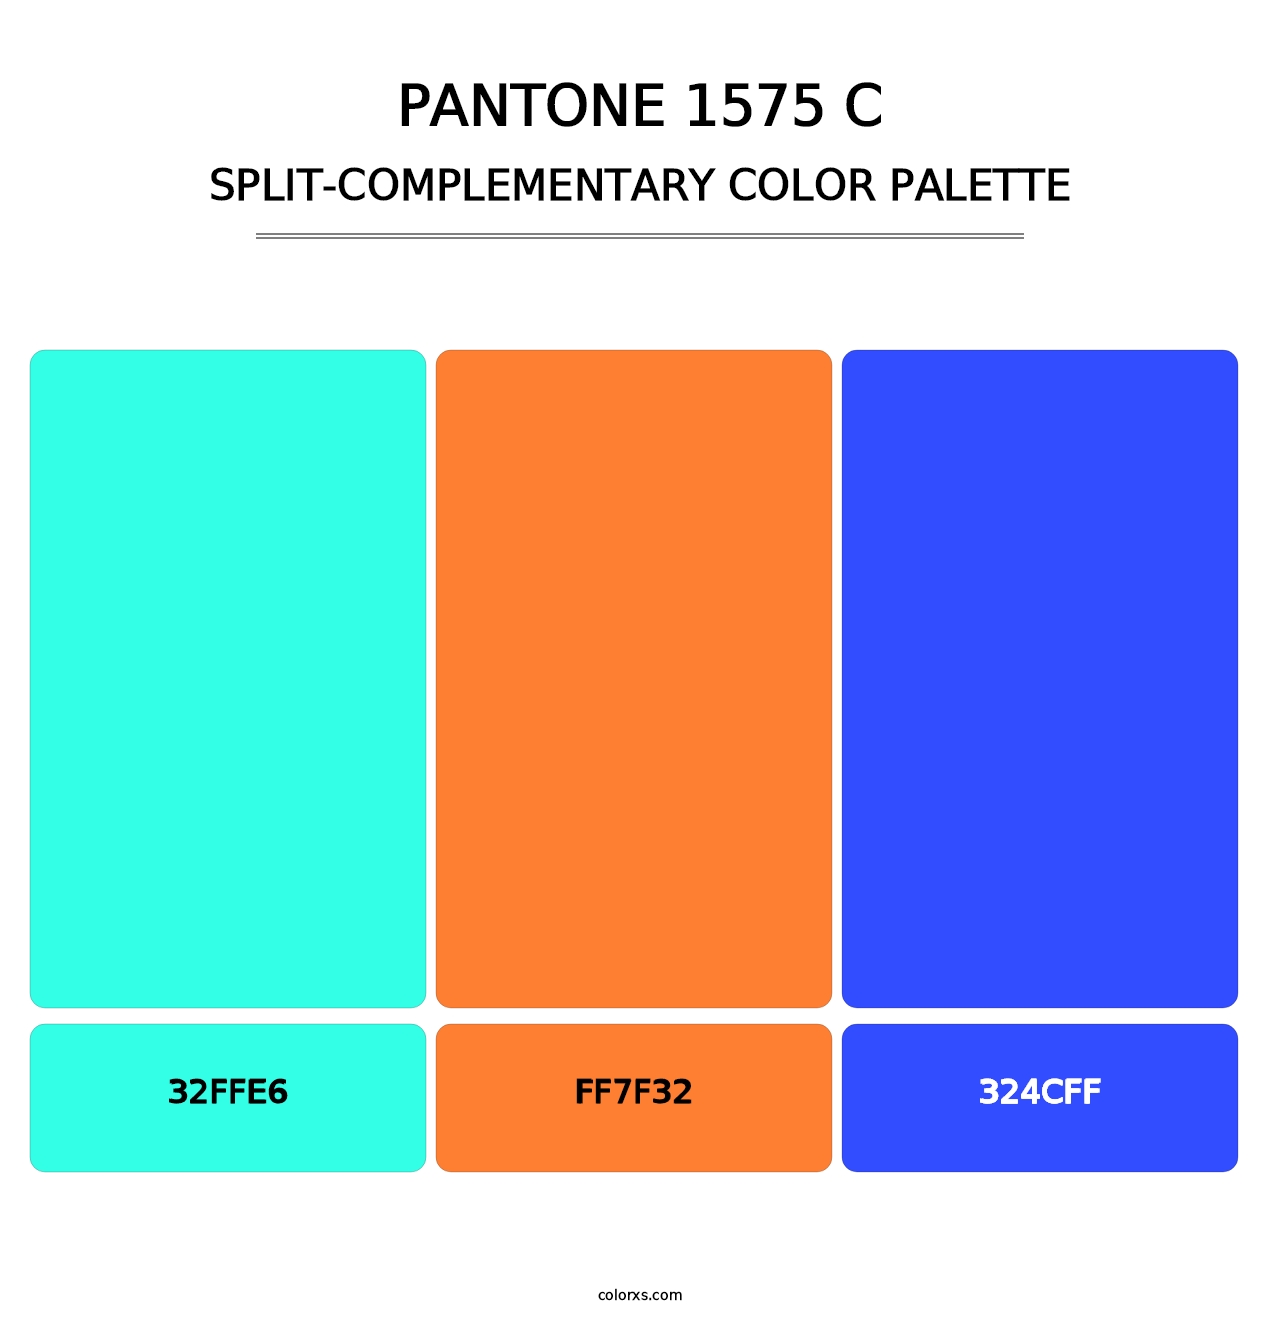 PANTONE 1575 C - Split-Complementary Color Palette